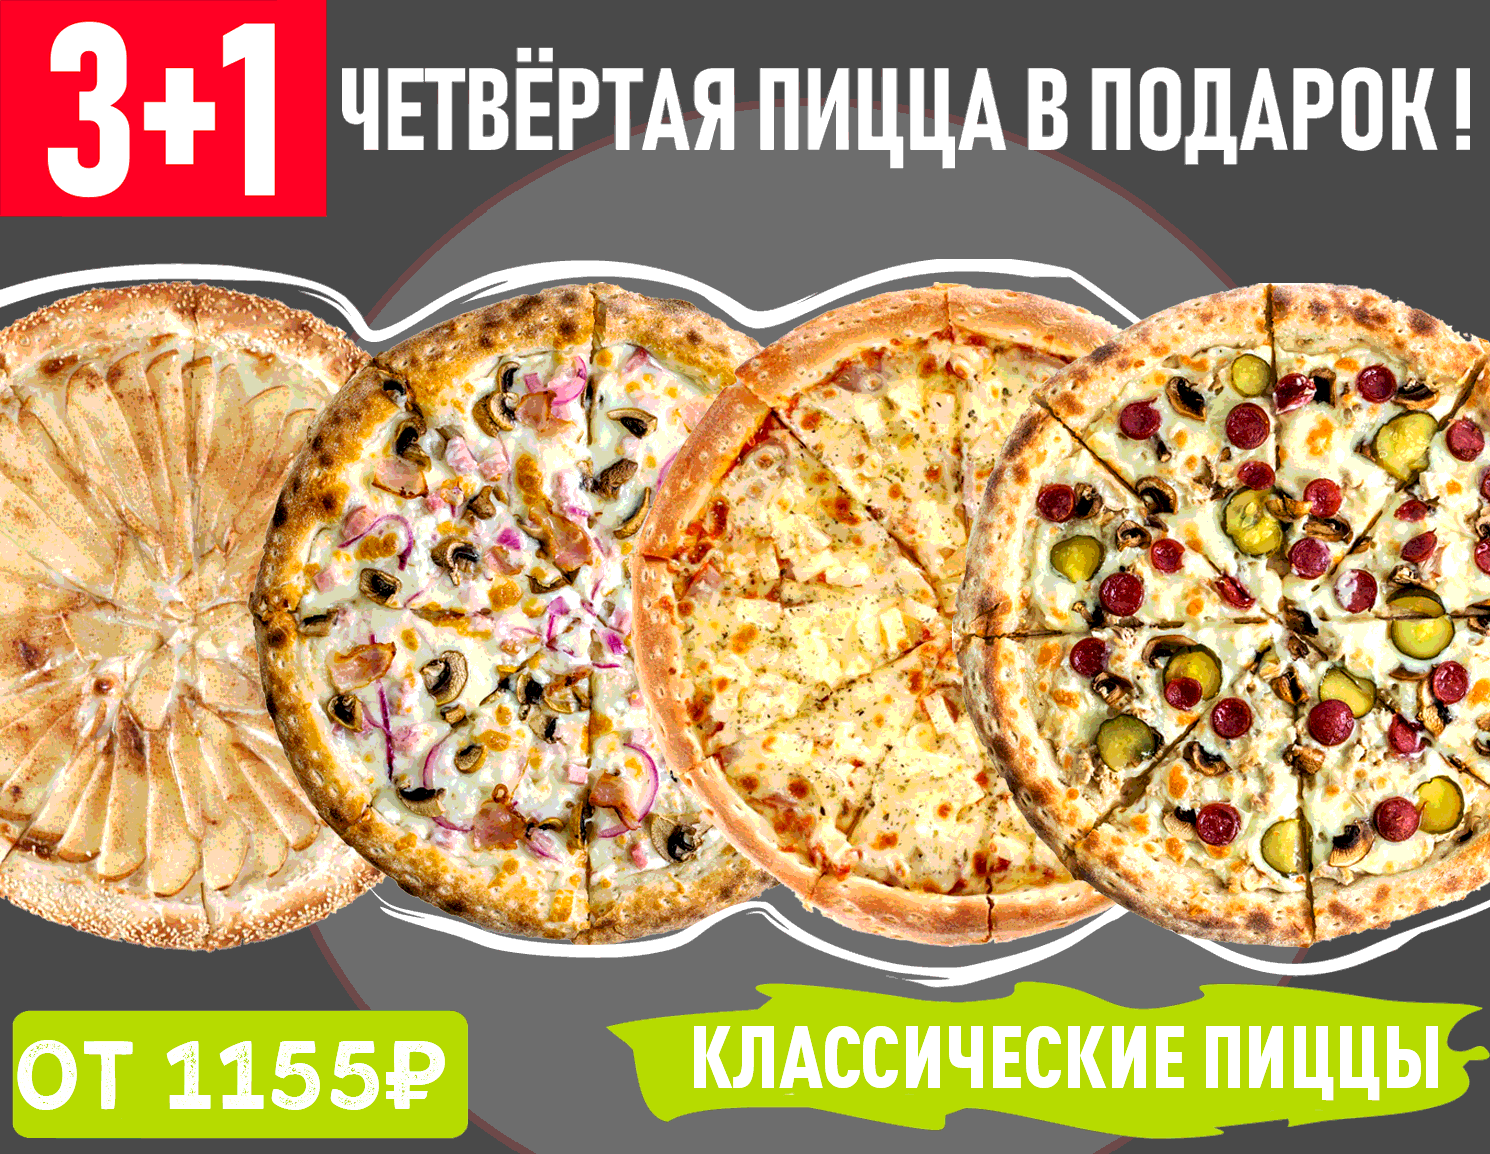 лучшая пицца в красноярске с доставкой рейтинг фото 103